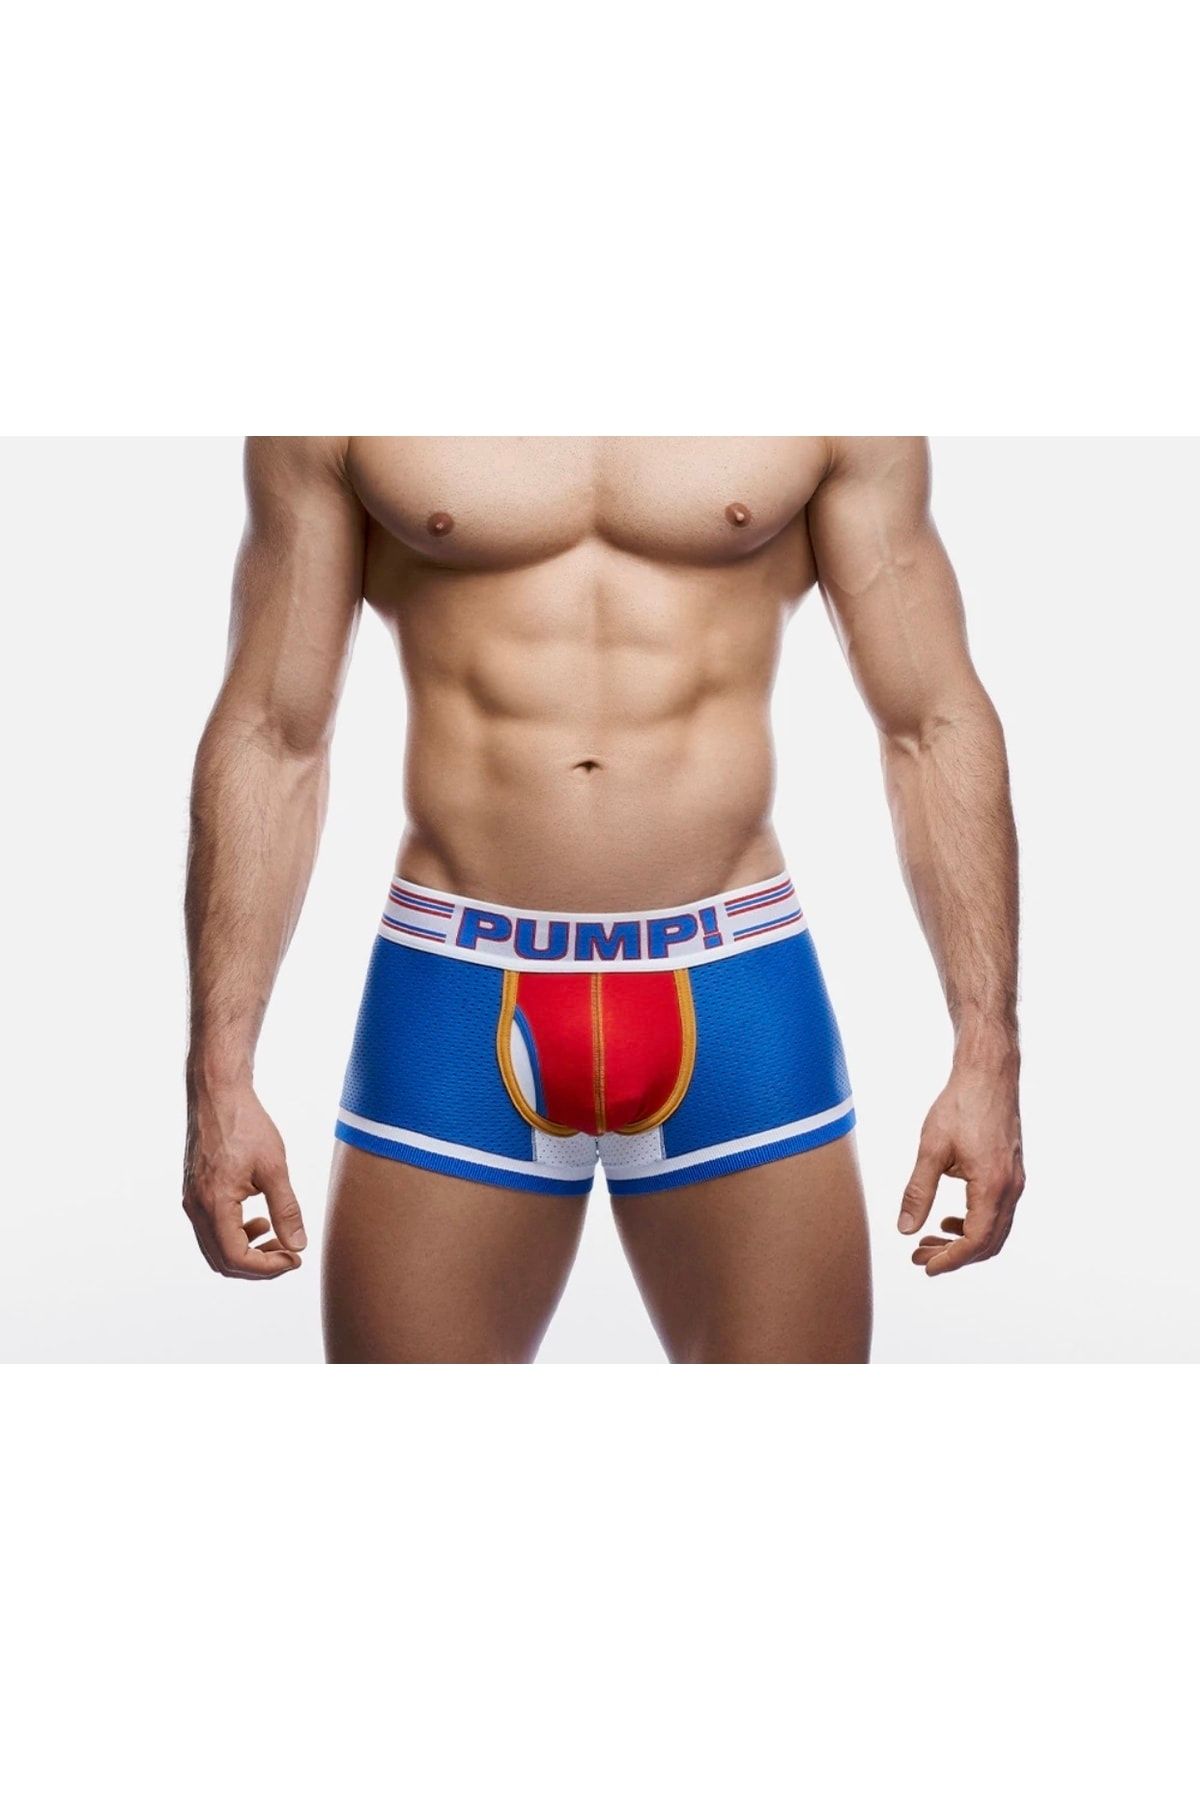 wearpump Pump! Underwear Velocity Touchdown